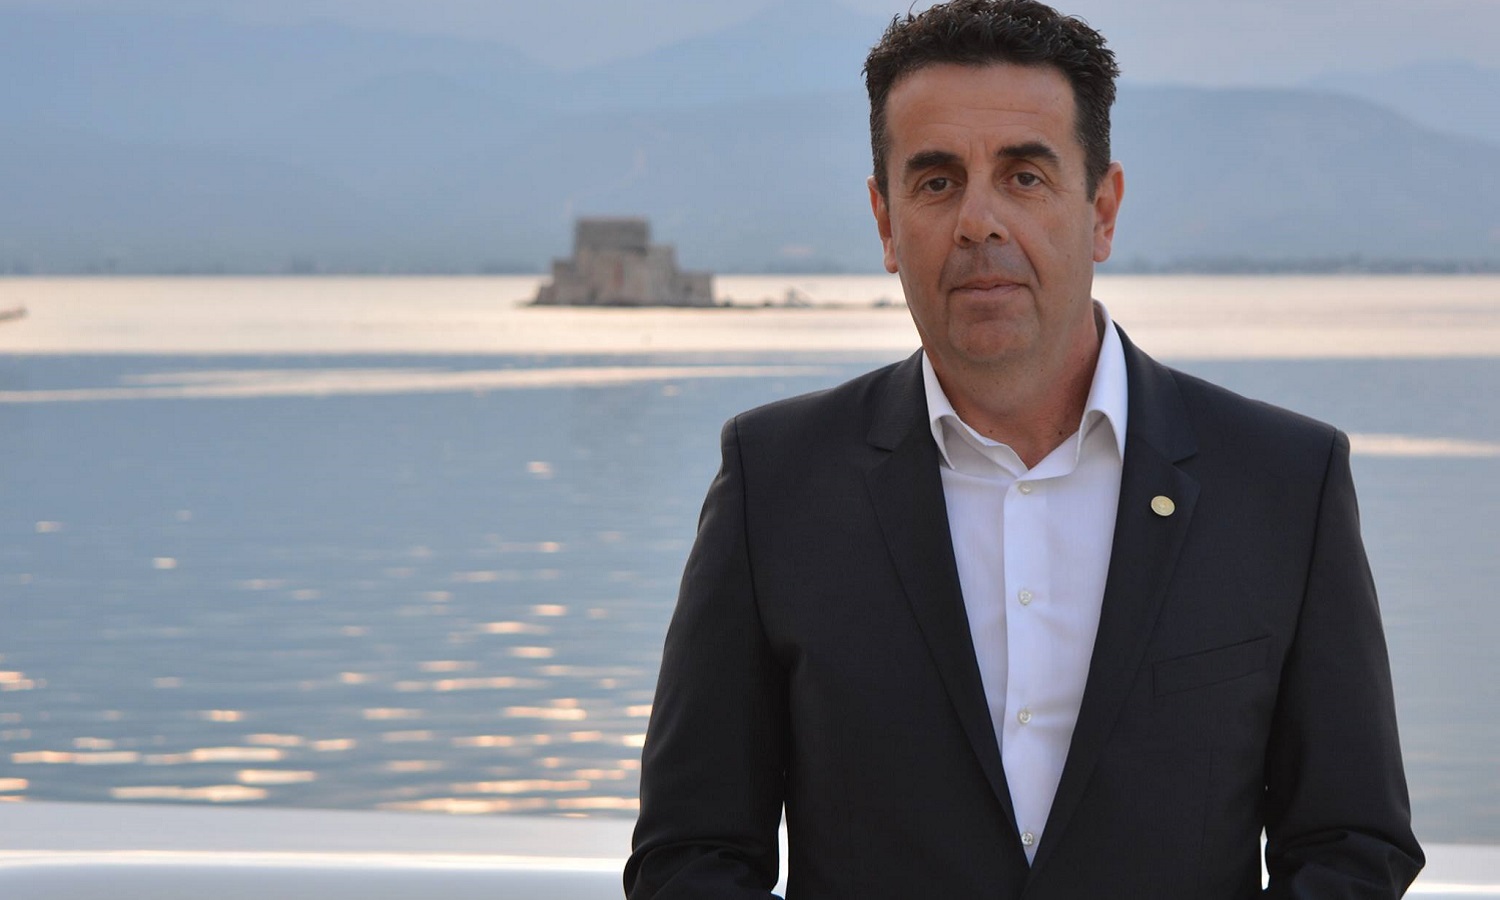 Πρώτος στο Ναύπλιο ο δήμαρχος που πετούσε περιττώματα στο σπίτι πολιτικού του αντιπάλου